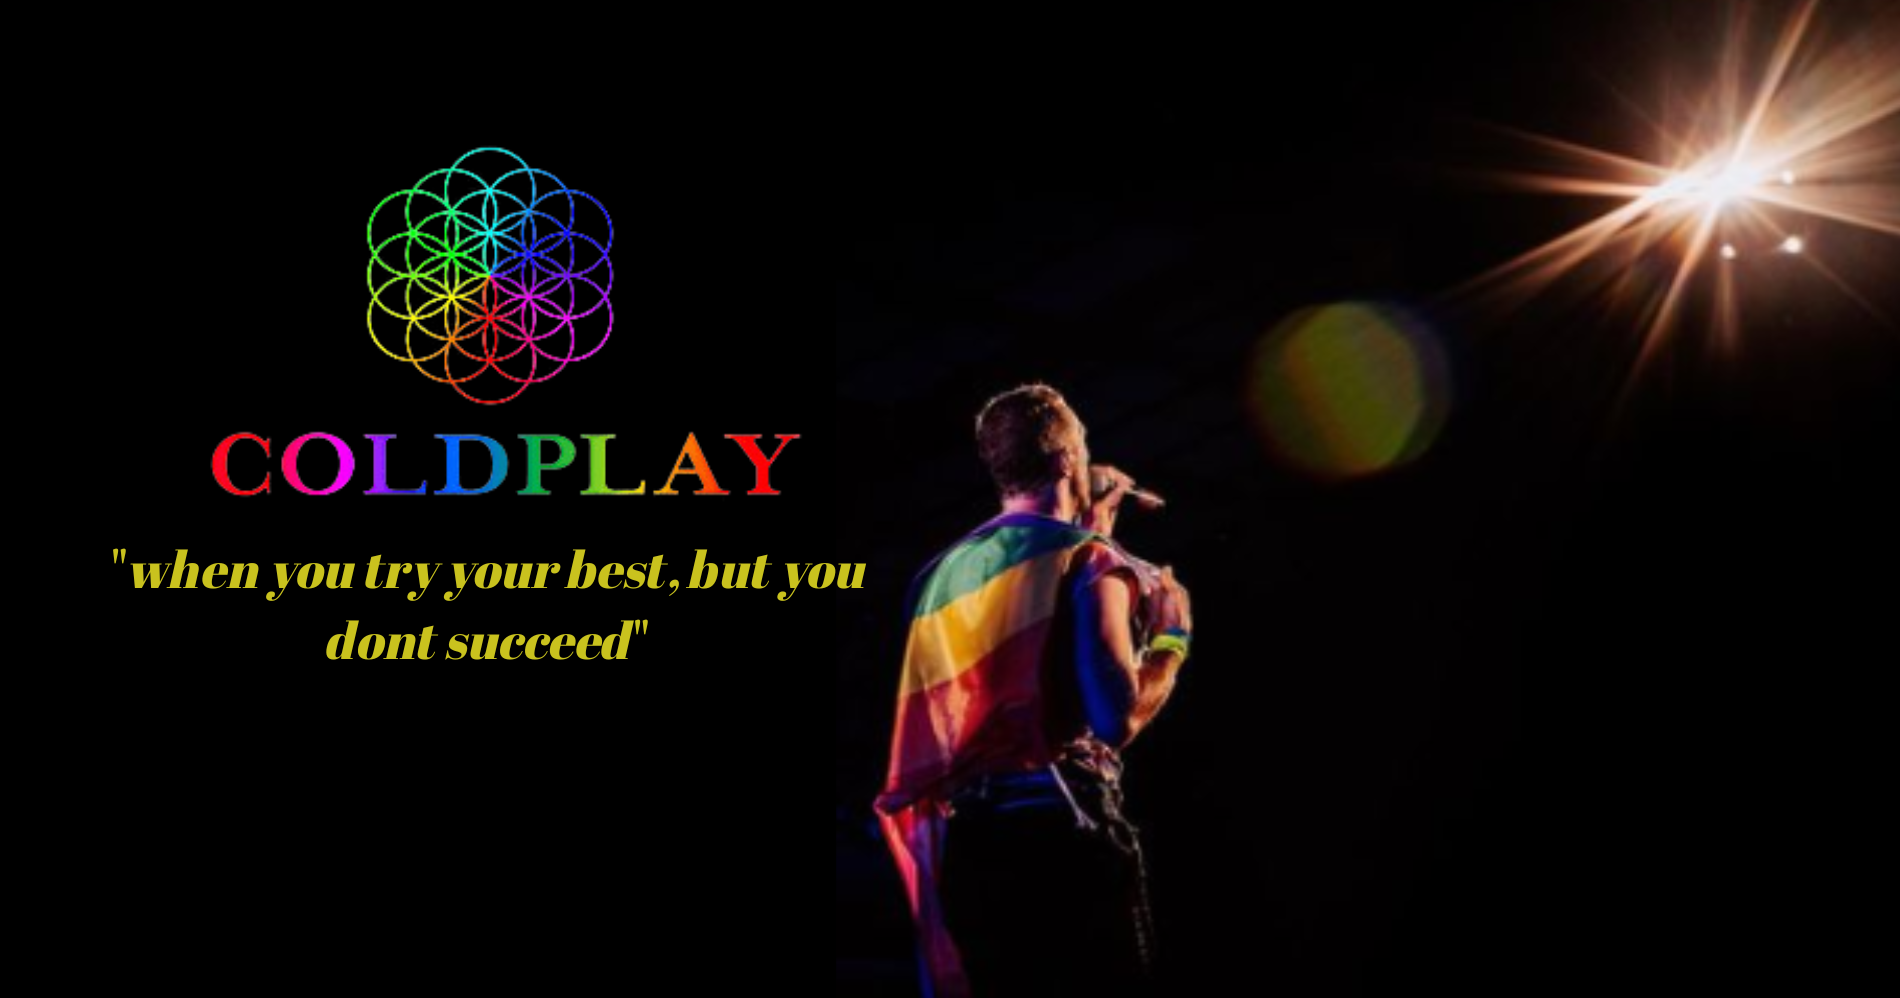 Kalah War Tiket Coldplay Yuk, Simak 5 Tips Berikut Ini! (Sumber: Instagram @Coldplay)